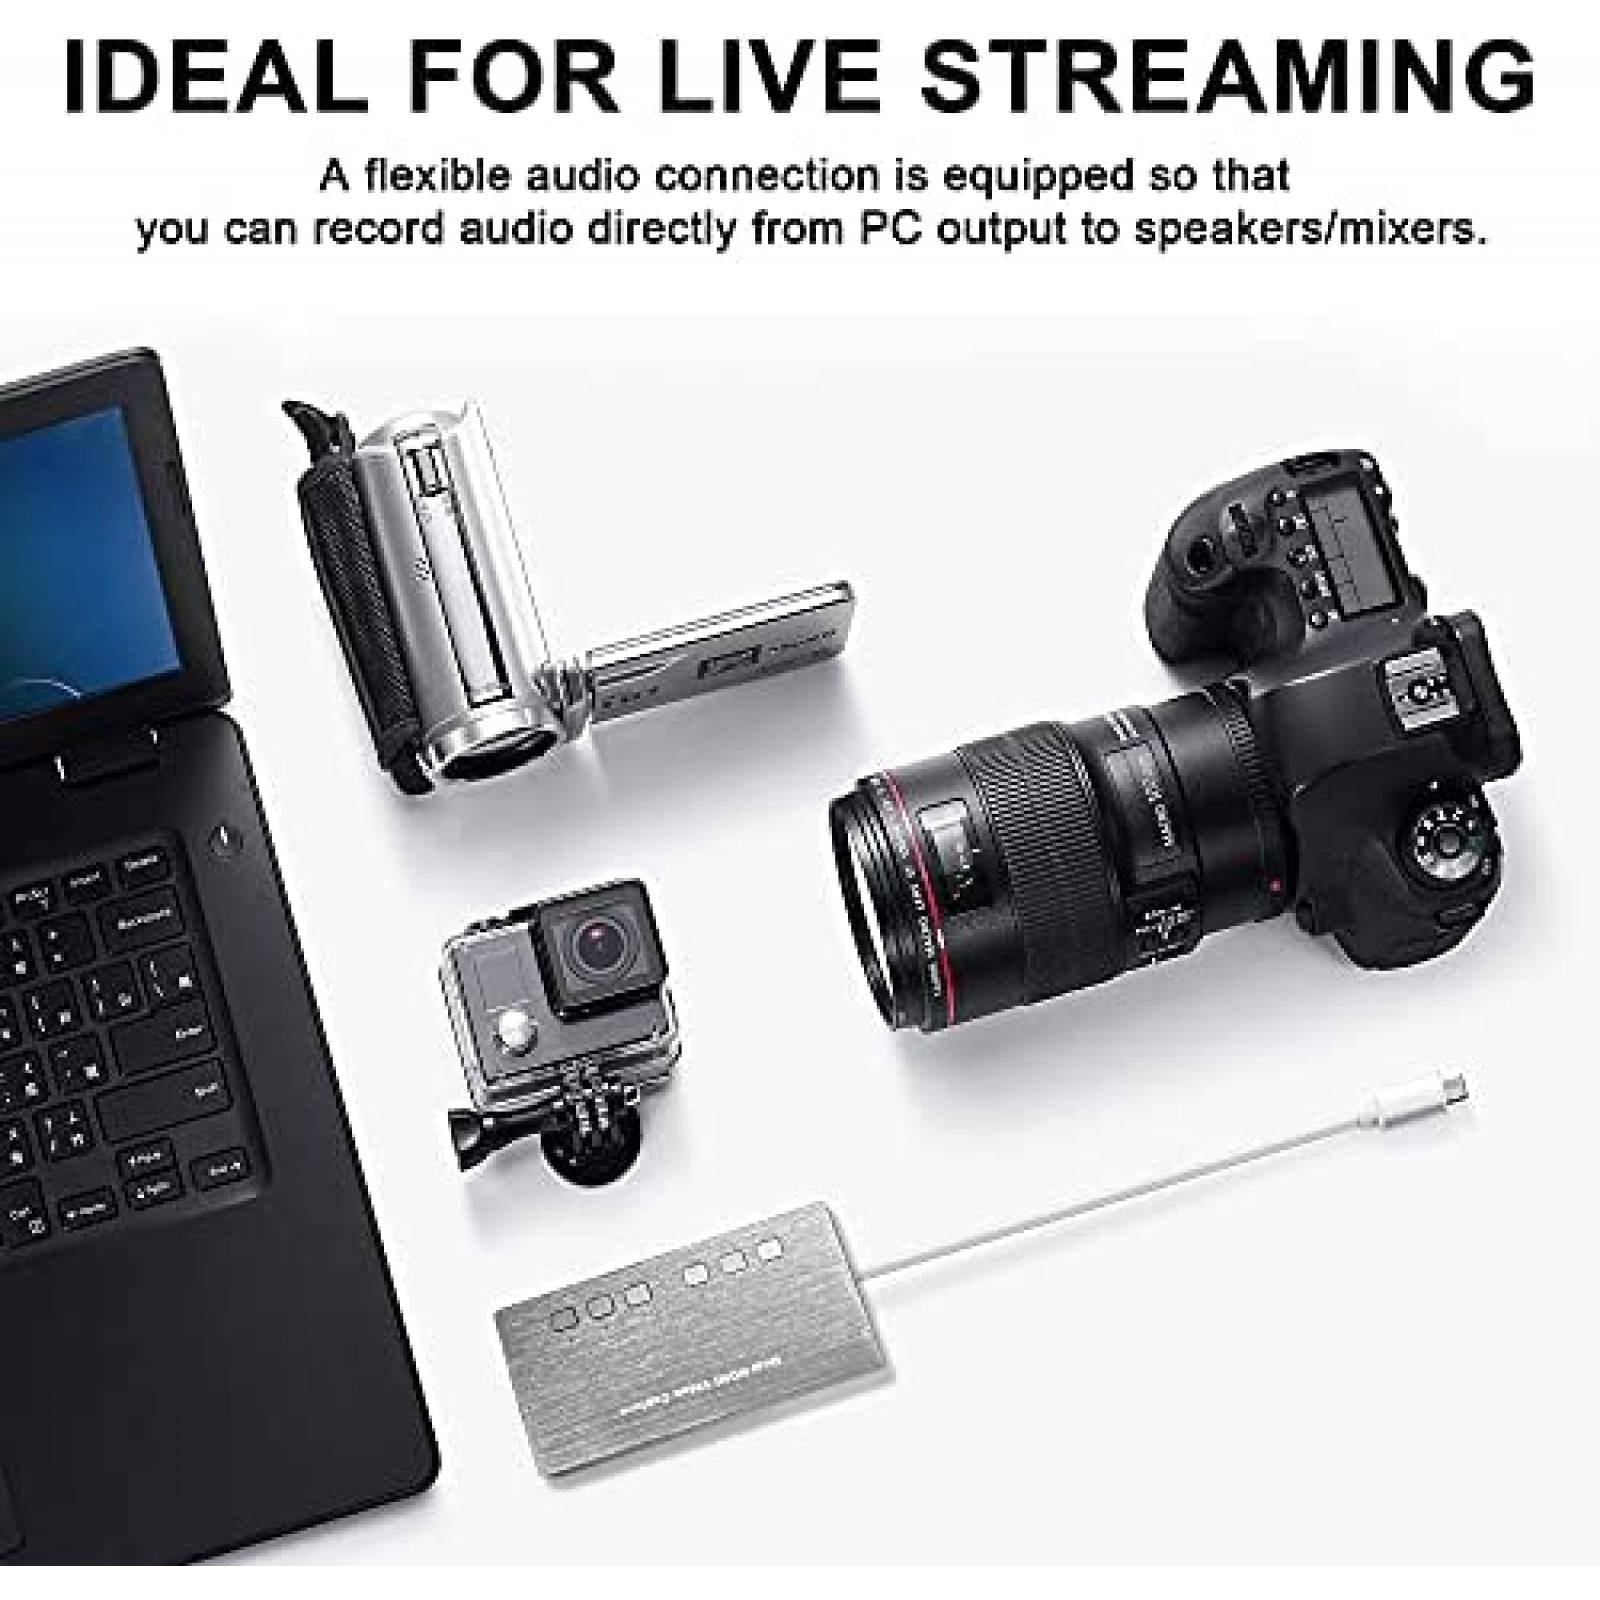 Capturadora De Video With Audio 1080p 60 FPS Live Streaming HDMI